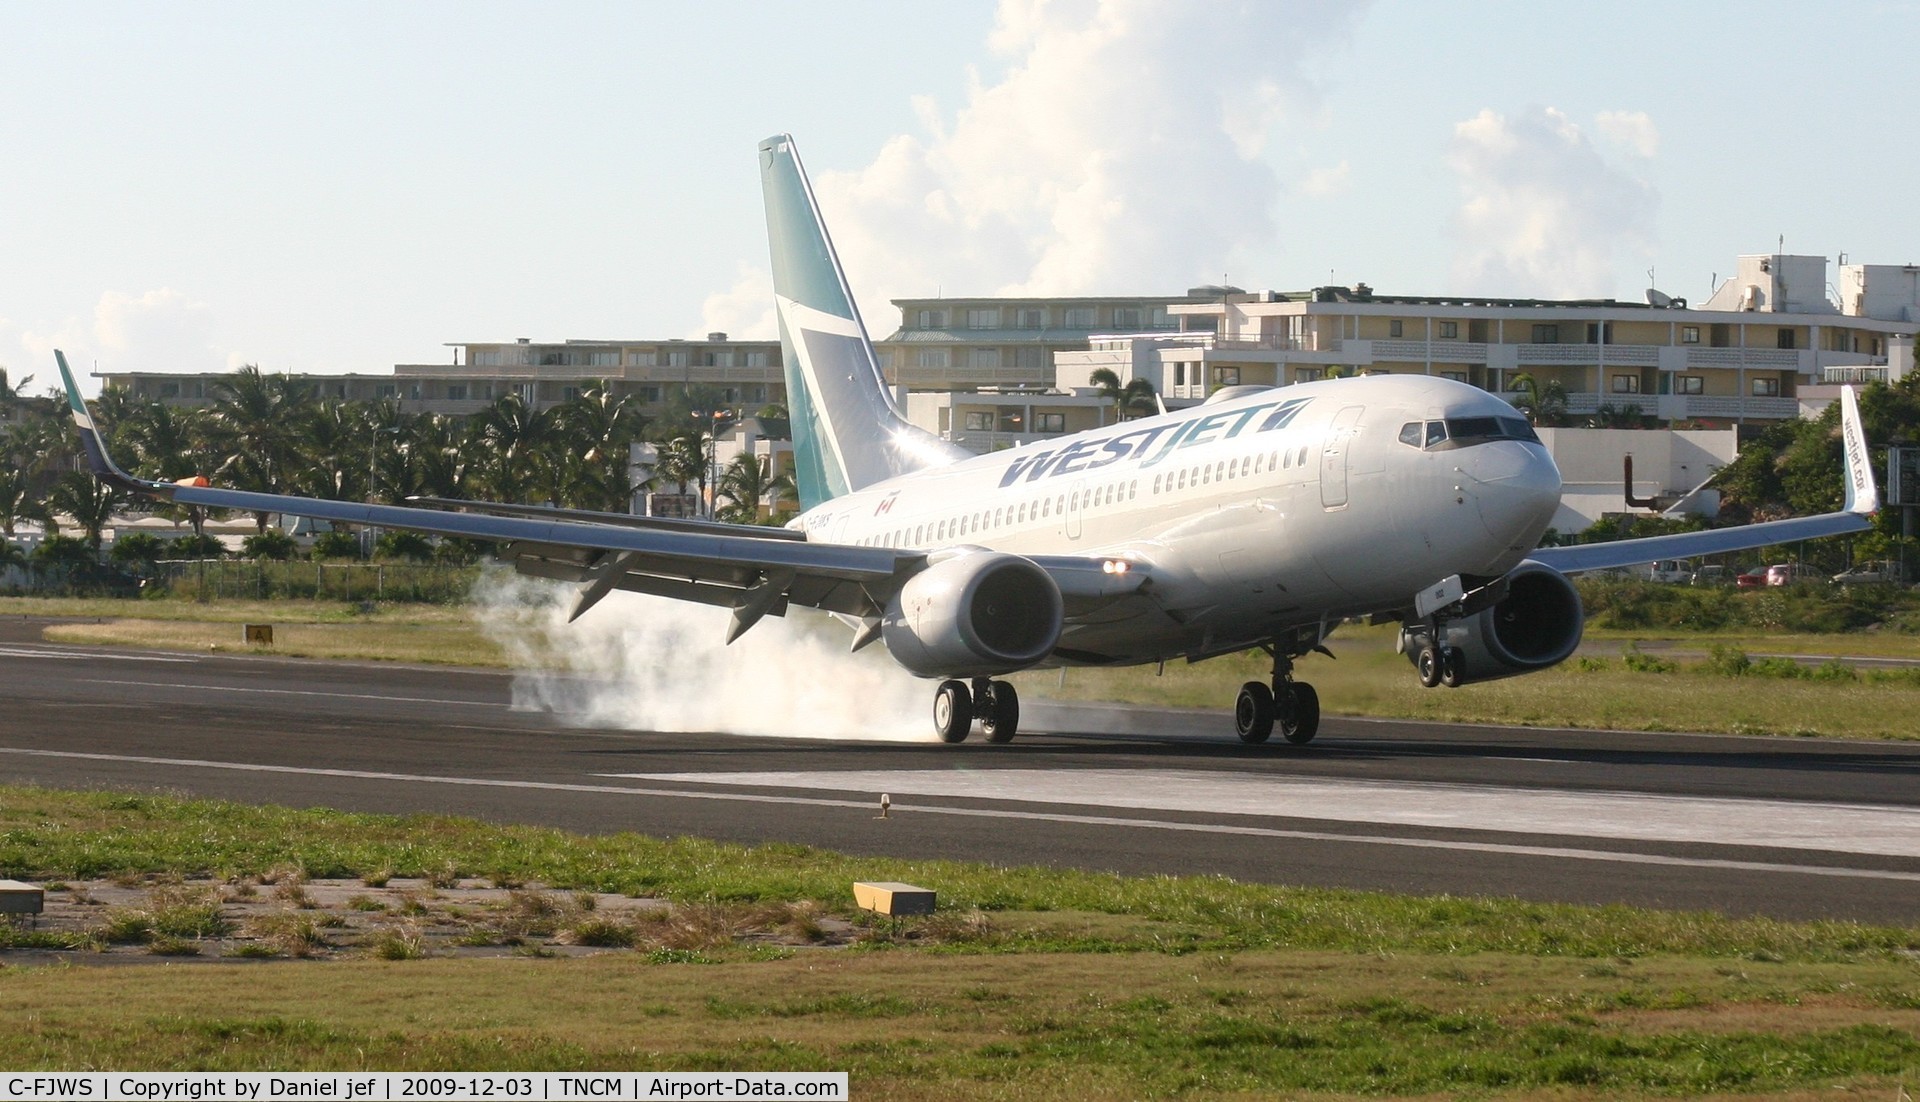 C-FJWS, 2001 Boeing 737-76N C/N 28651, Canjet landing at TNCM